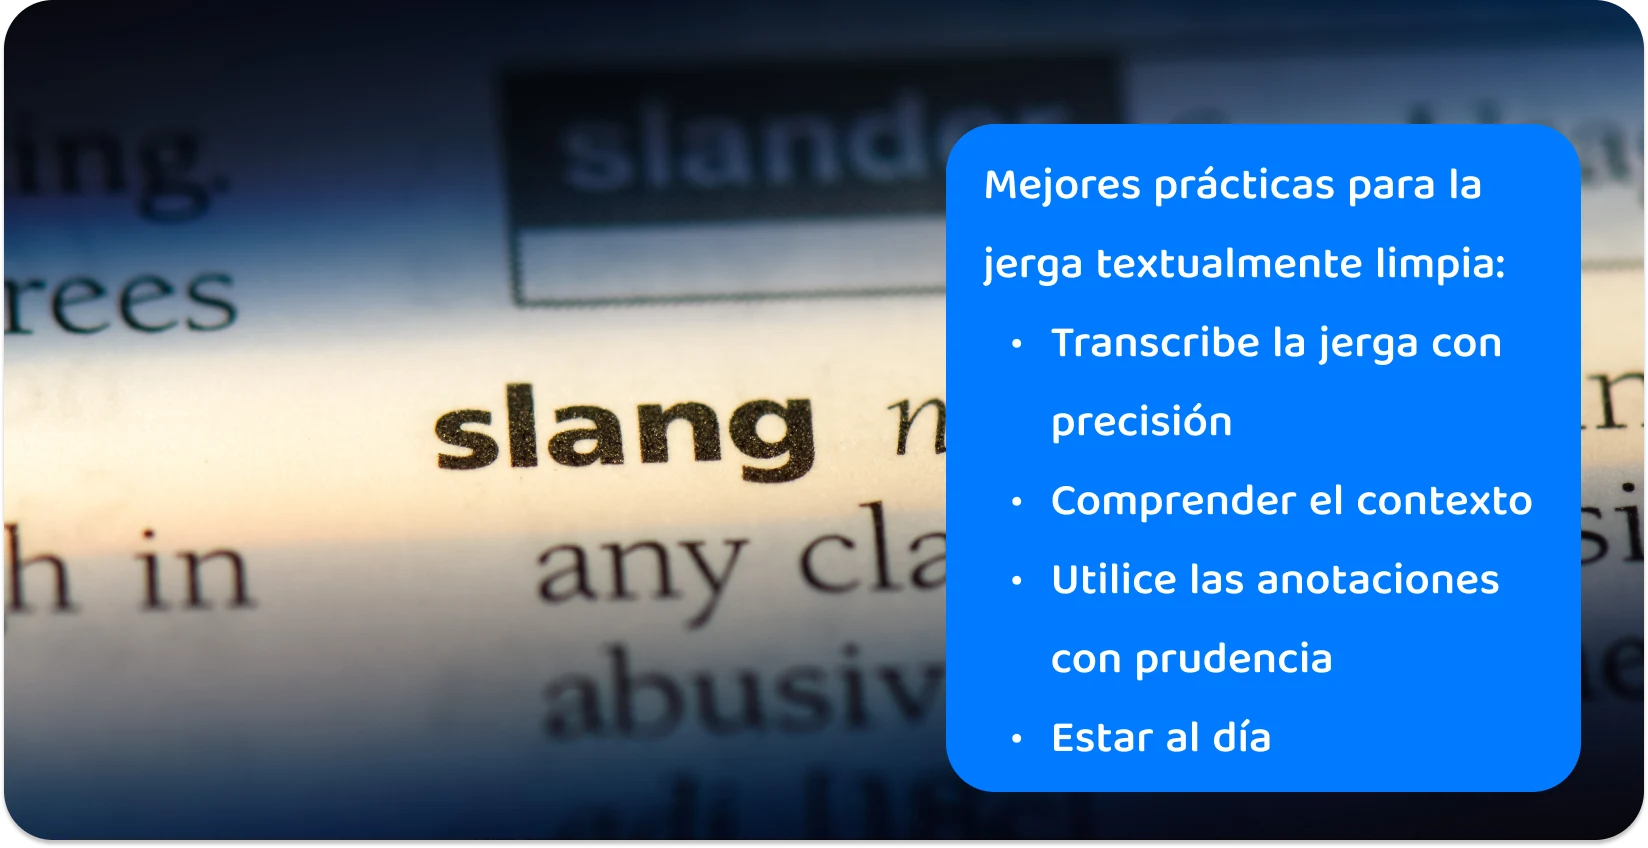 Primer plano de la palabra "jerga" en un diccionario, destacando la precisión necesaria en las prácticas de transcripción para la lengua vernácula moderna.